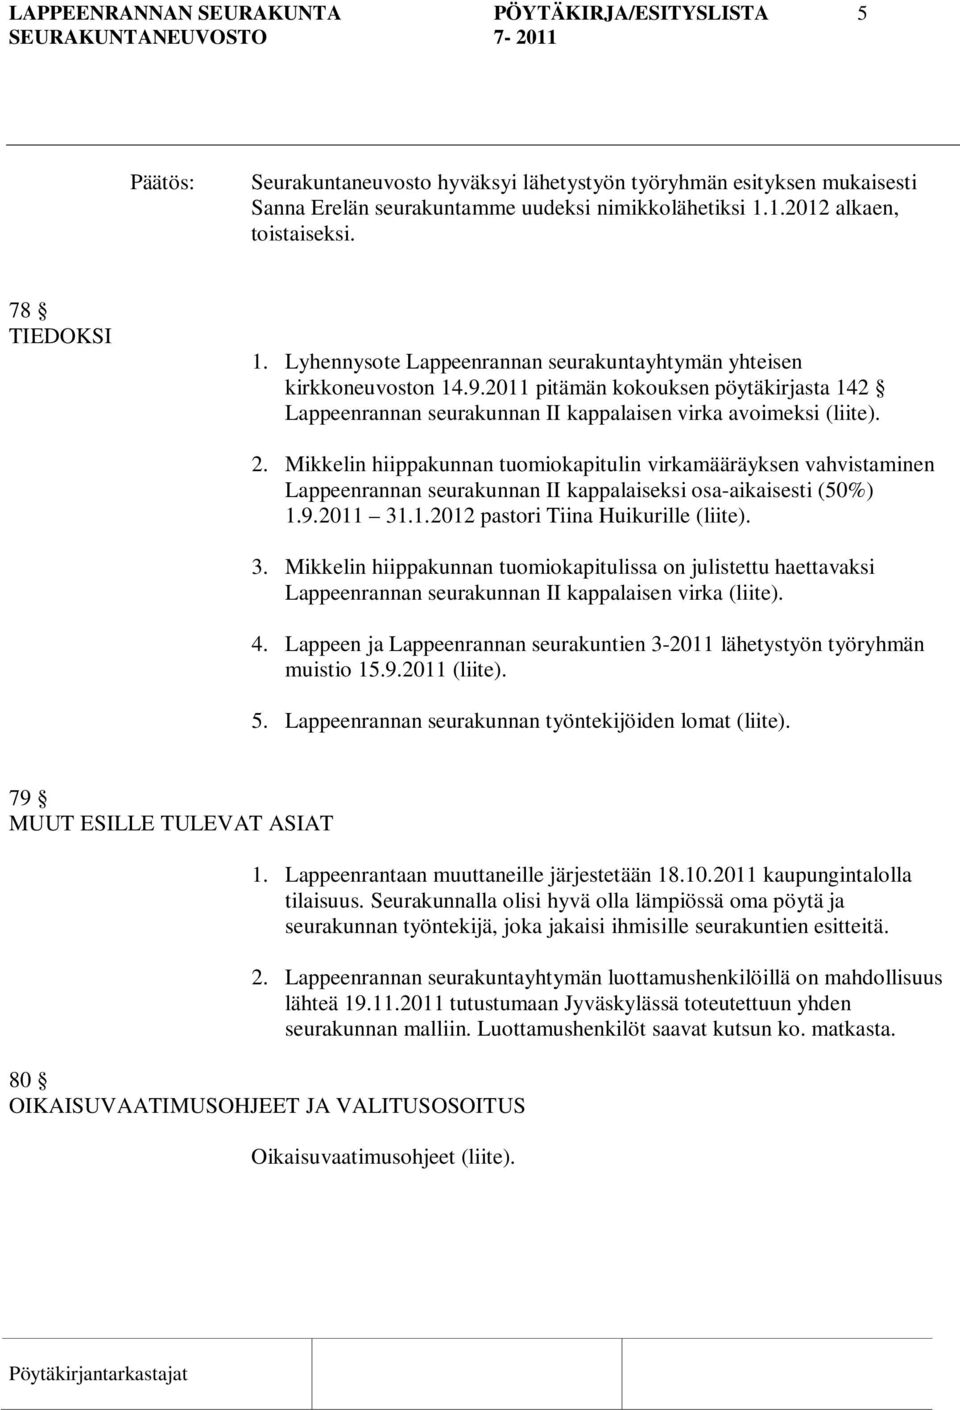 2011 pitämän kokouksen pöytäkirjasta 142 Lappeenrannan seurakunnan II kappalaisen virka avoimeksi (liite). 2.